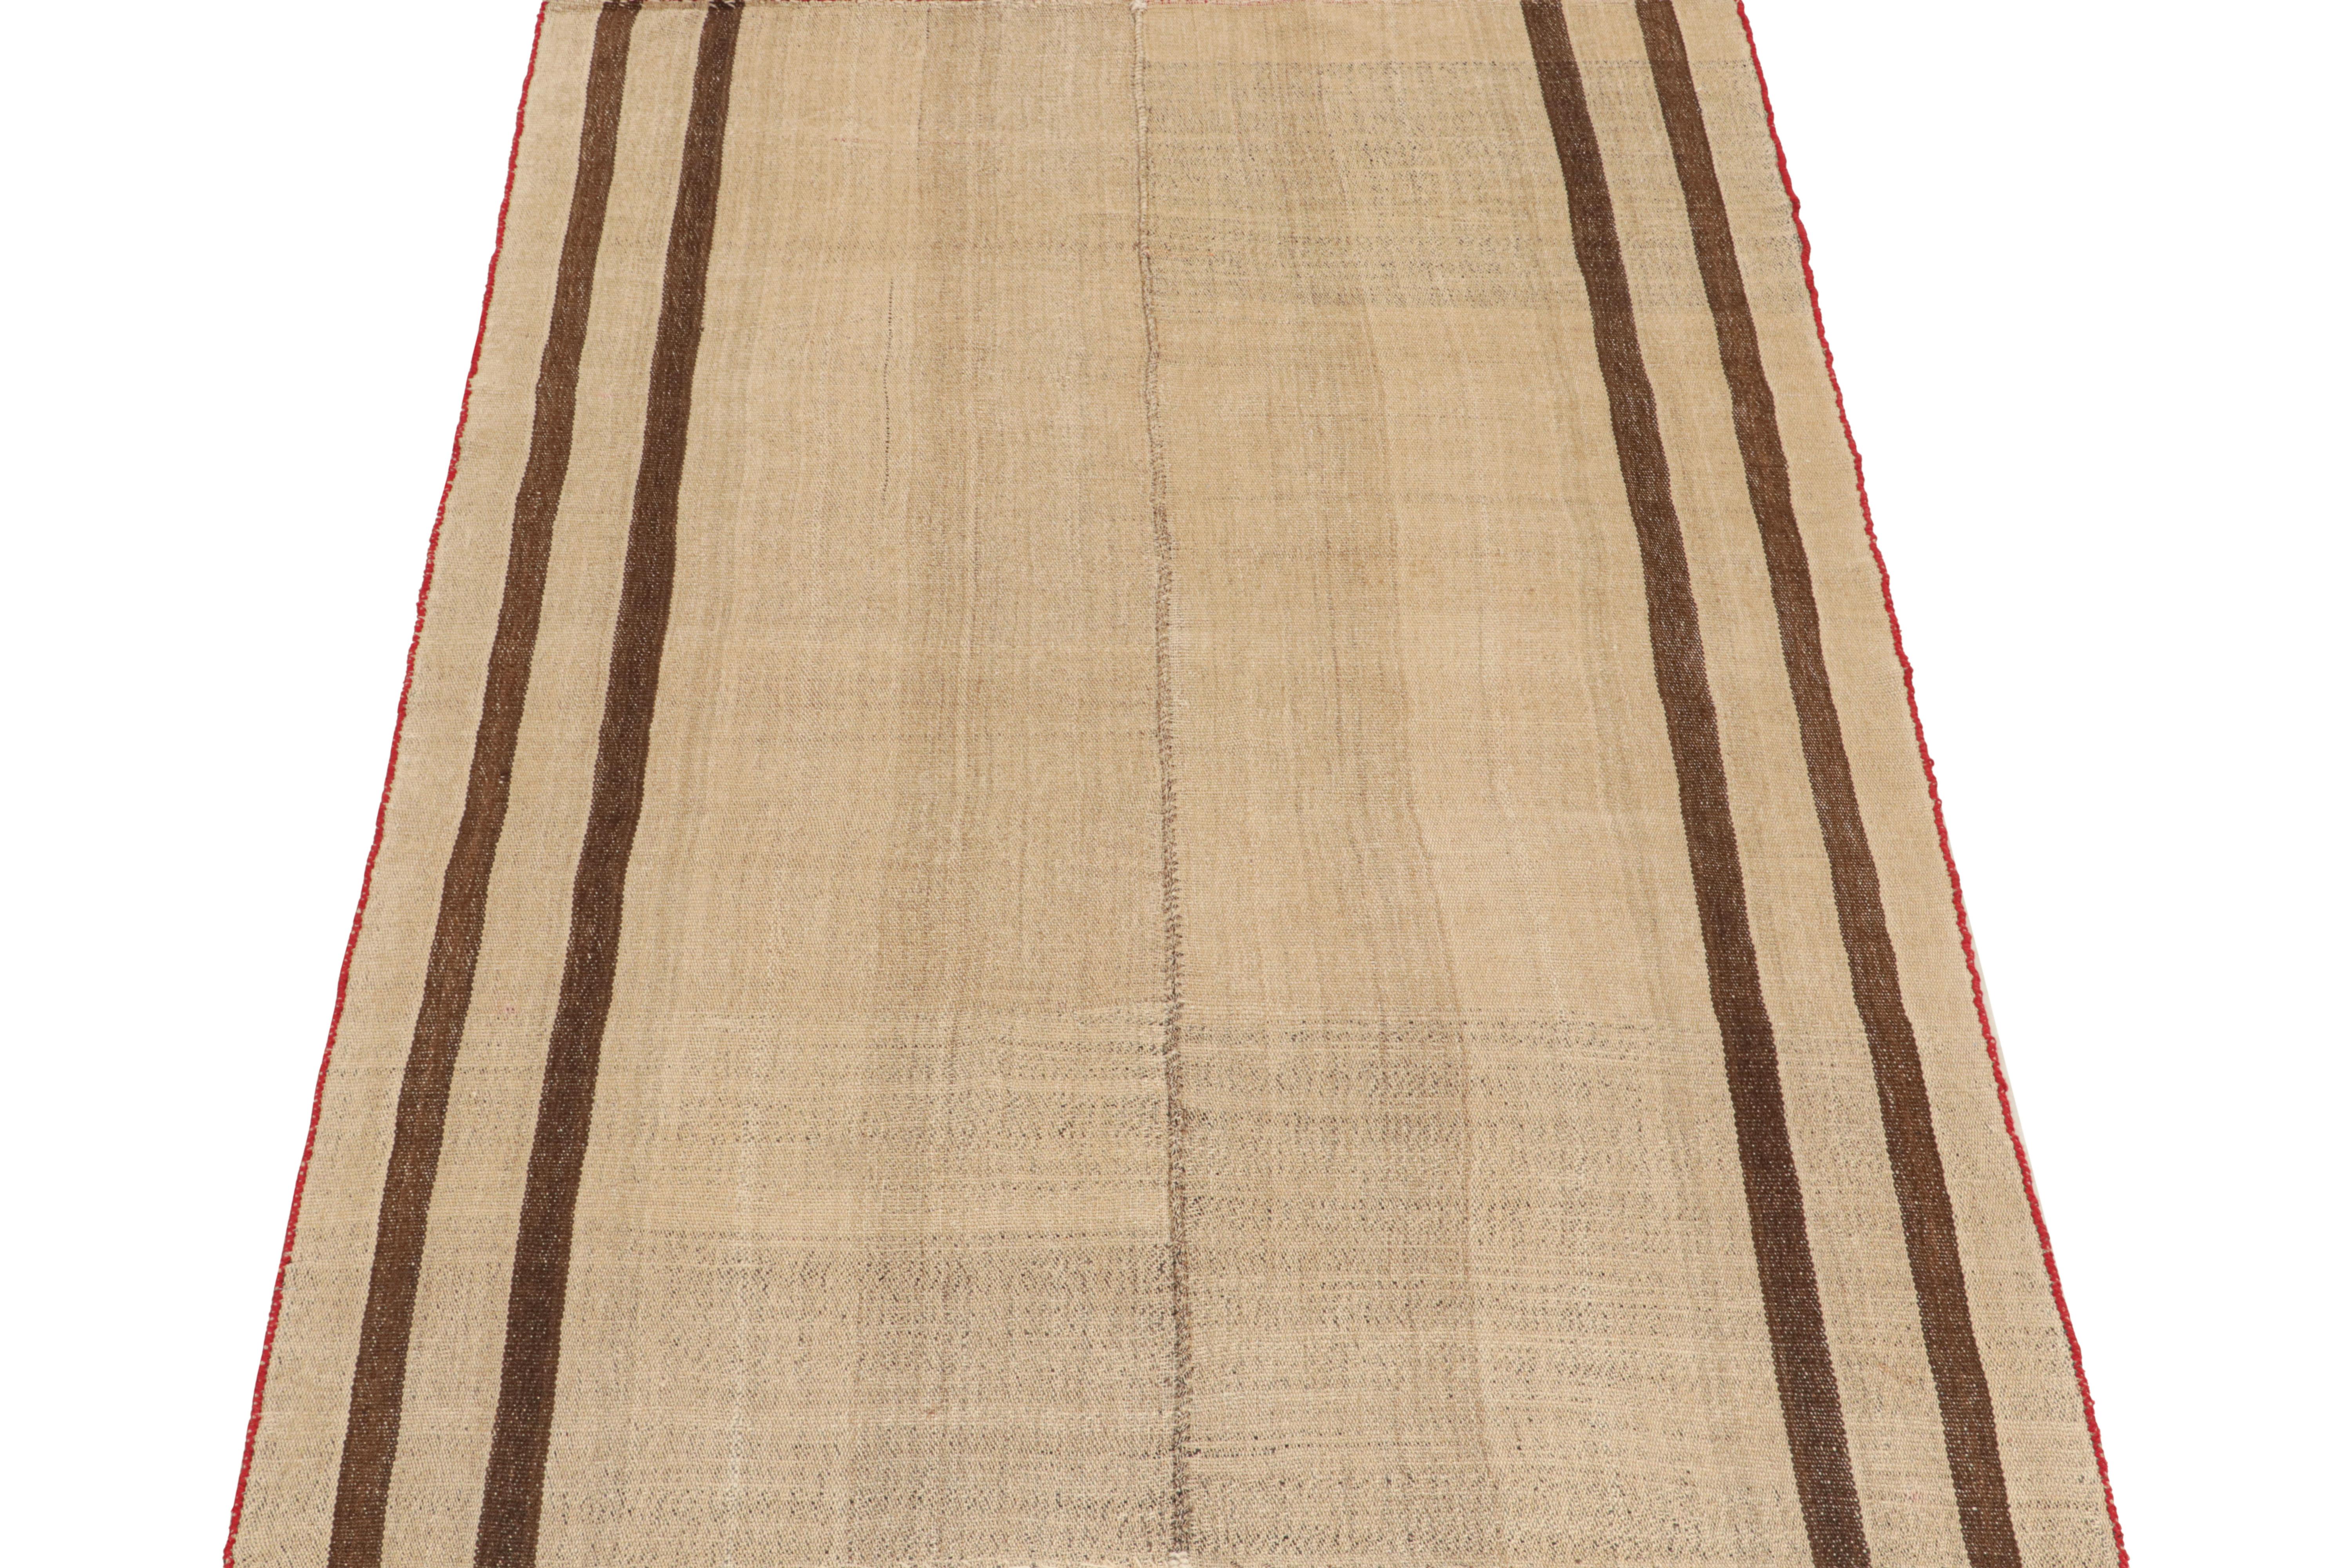 Ce kilim persan vintage 6x8 est un tapis tribal Qashqai du milieu du siècle, tissé à la main en laine vers 1950-1960.

Ce type de Kilim remarque un tissage plat de style Jajim, dans lequel les tisserands tribaux combinent des pièces plus petites en